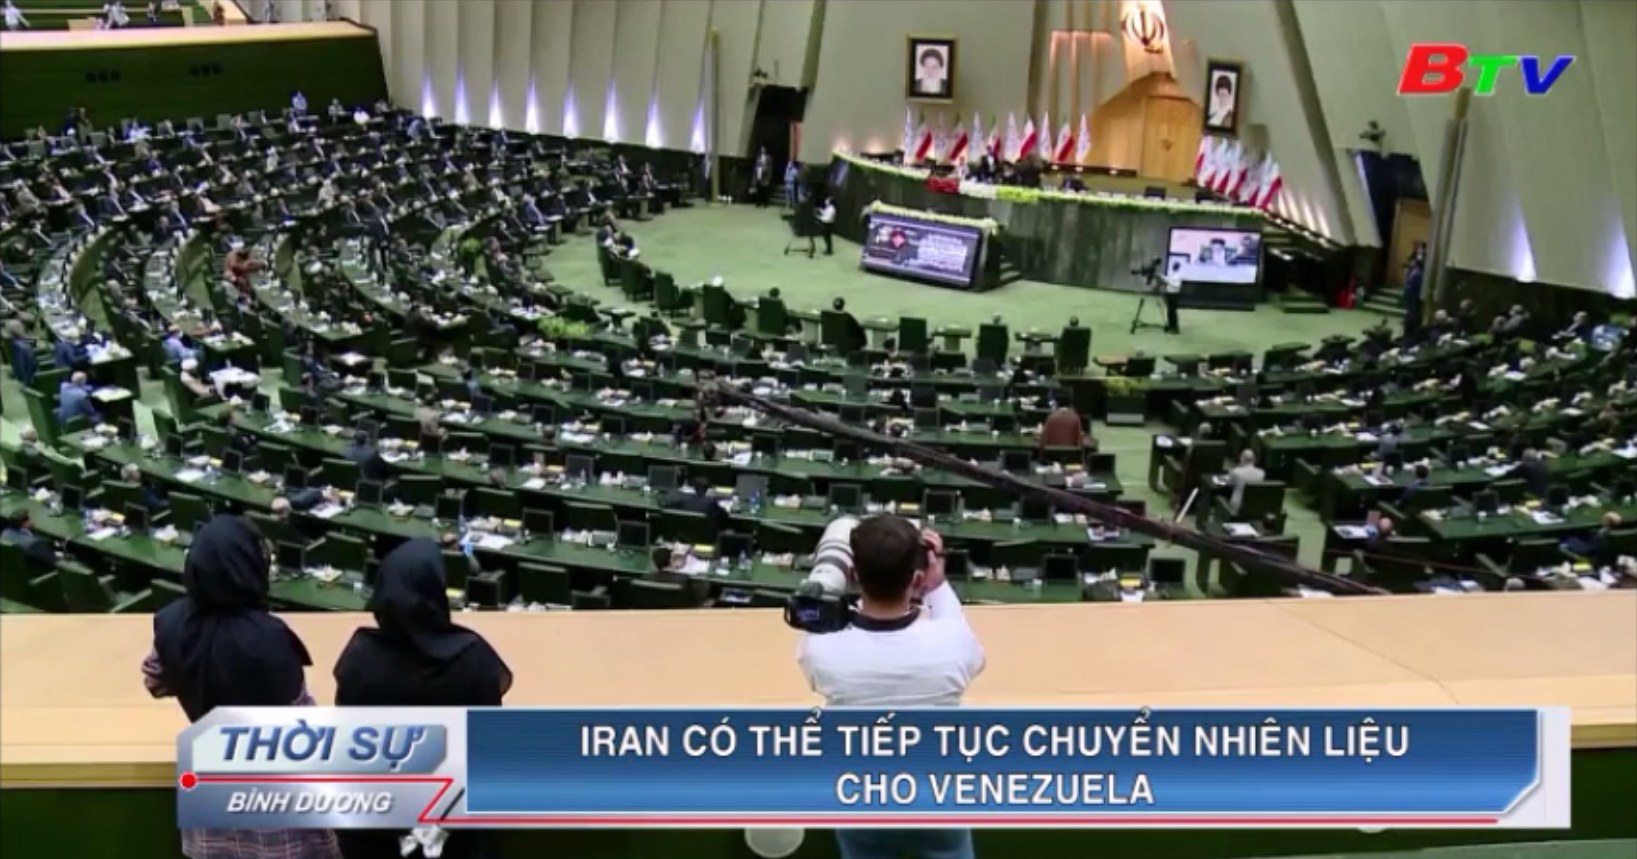 Iran có thể tiếp tục chuyển nhiên liệu cho Venezuela